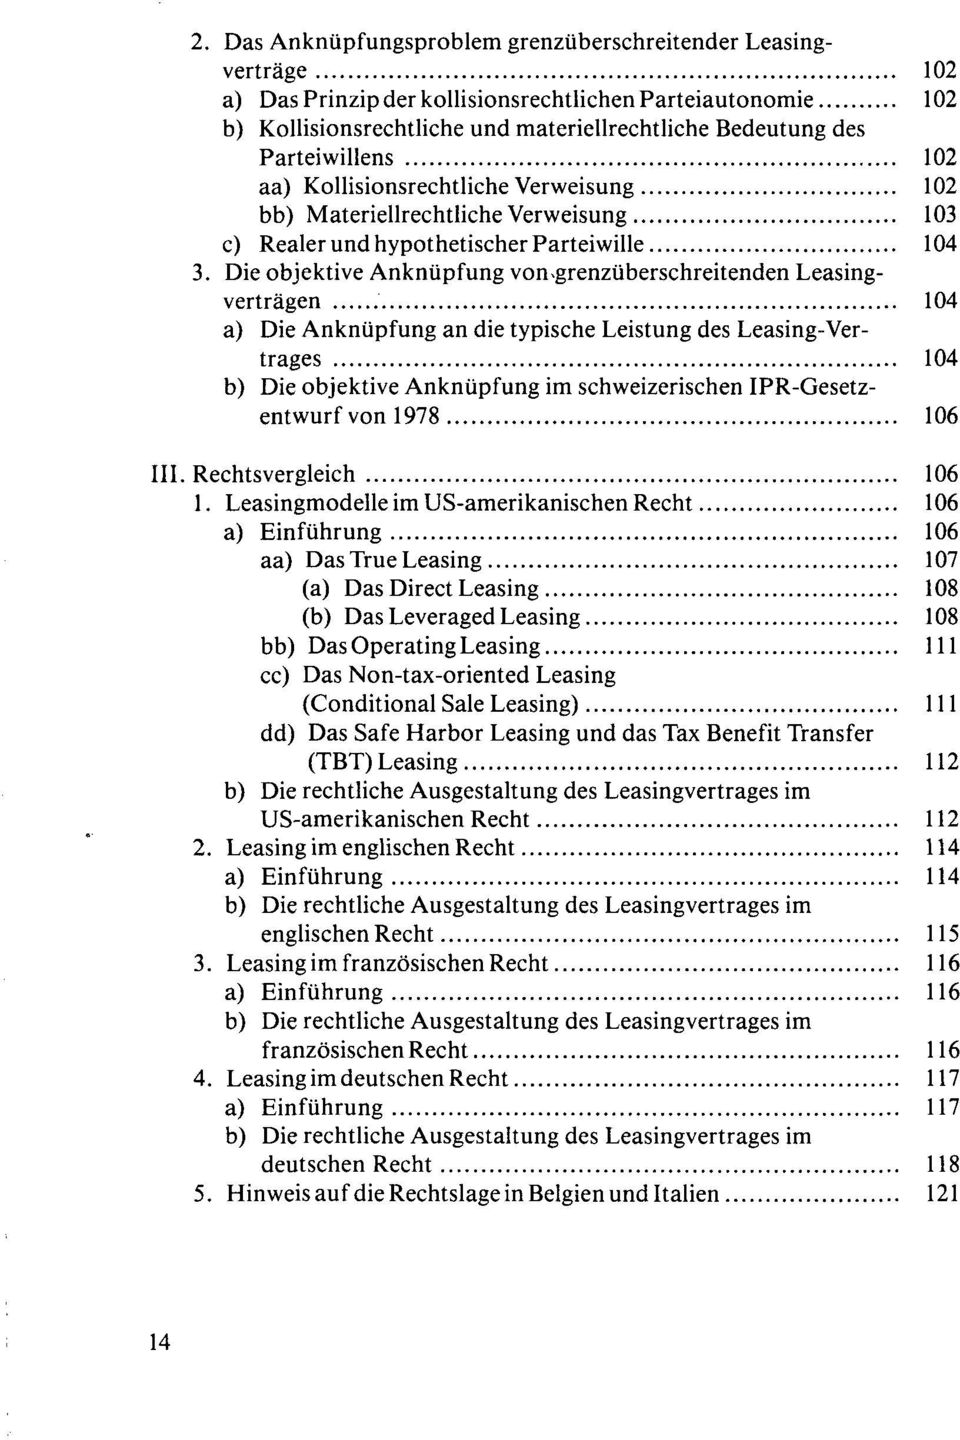 grenzüberschreitenden Leasingverträgen 104 a) Die Anknüpfung an die typische Leistung des Leasing-Vertrages 104 b) Die objektive Anknüpfung im schweizerischen IPR-Gesetzentwurf von 1978 106 III.